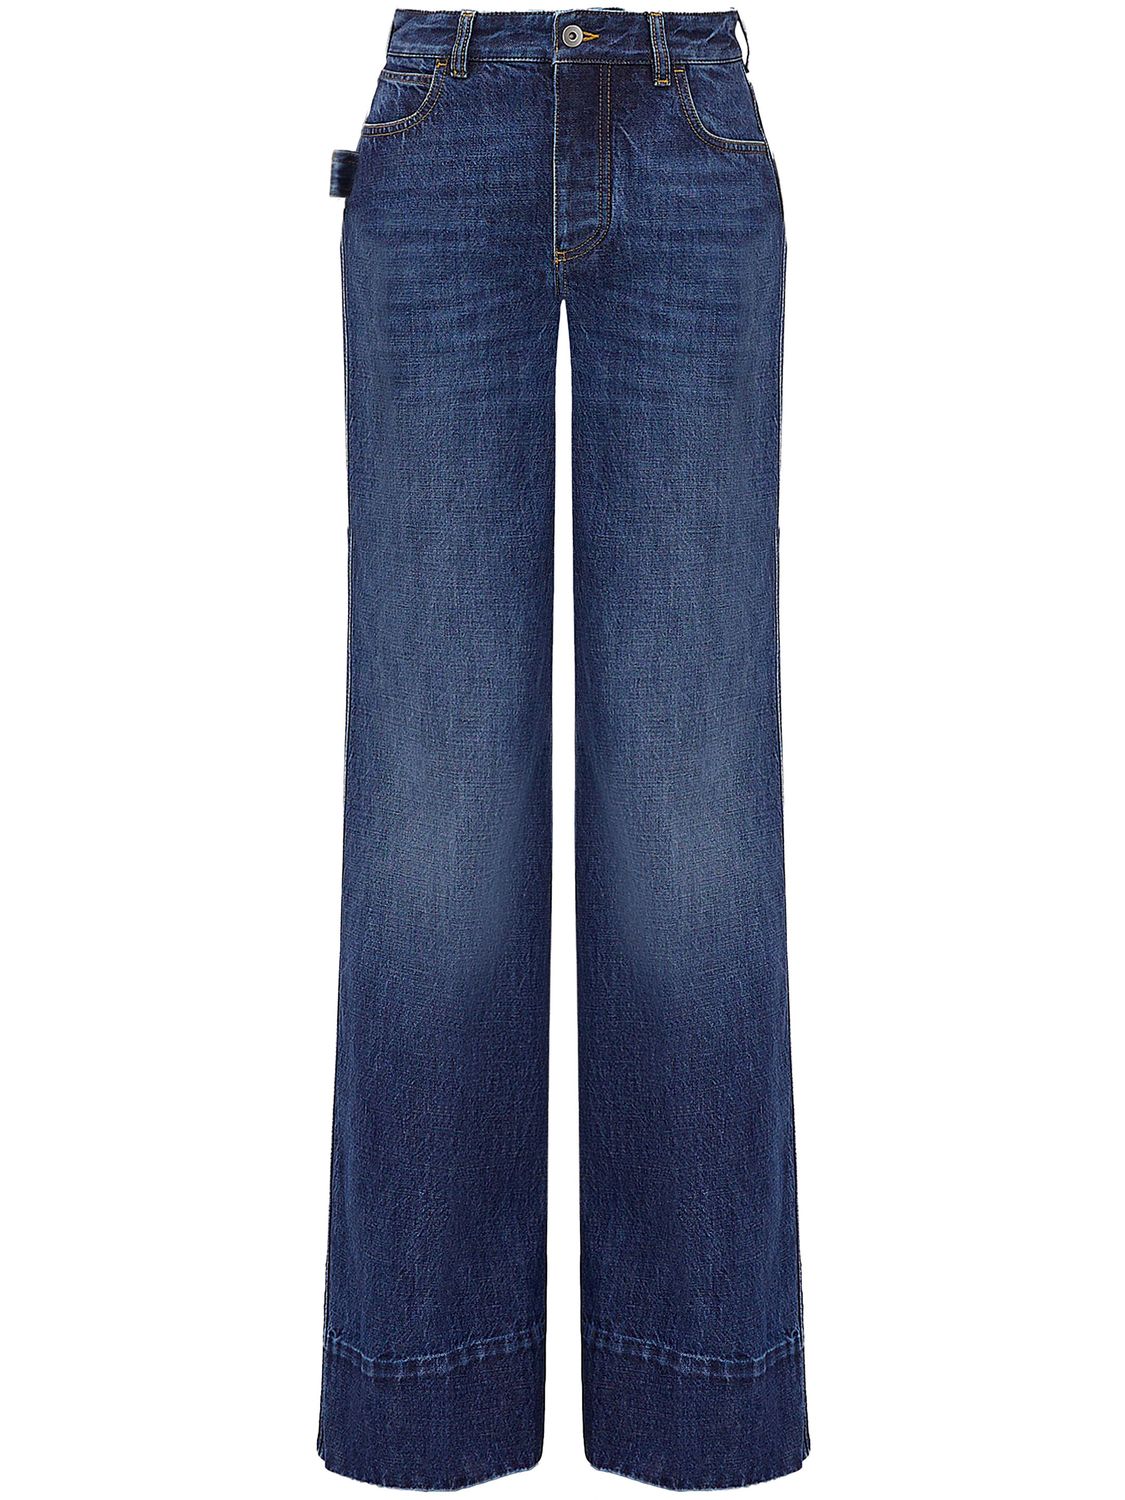 Quần Jeans Denim rộng cạp xanh nhạt cho nữ cho mùa xuân và mùa hè 2021